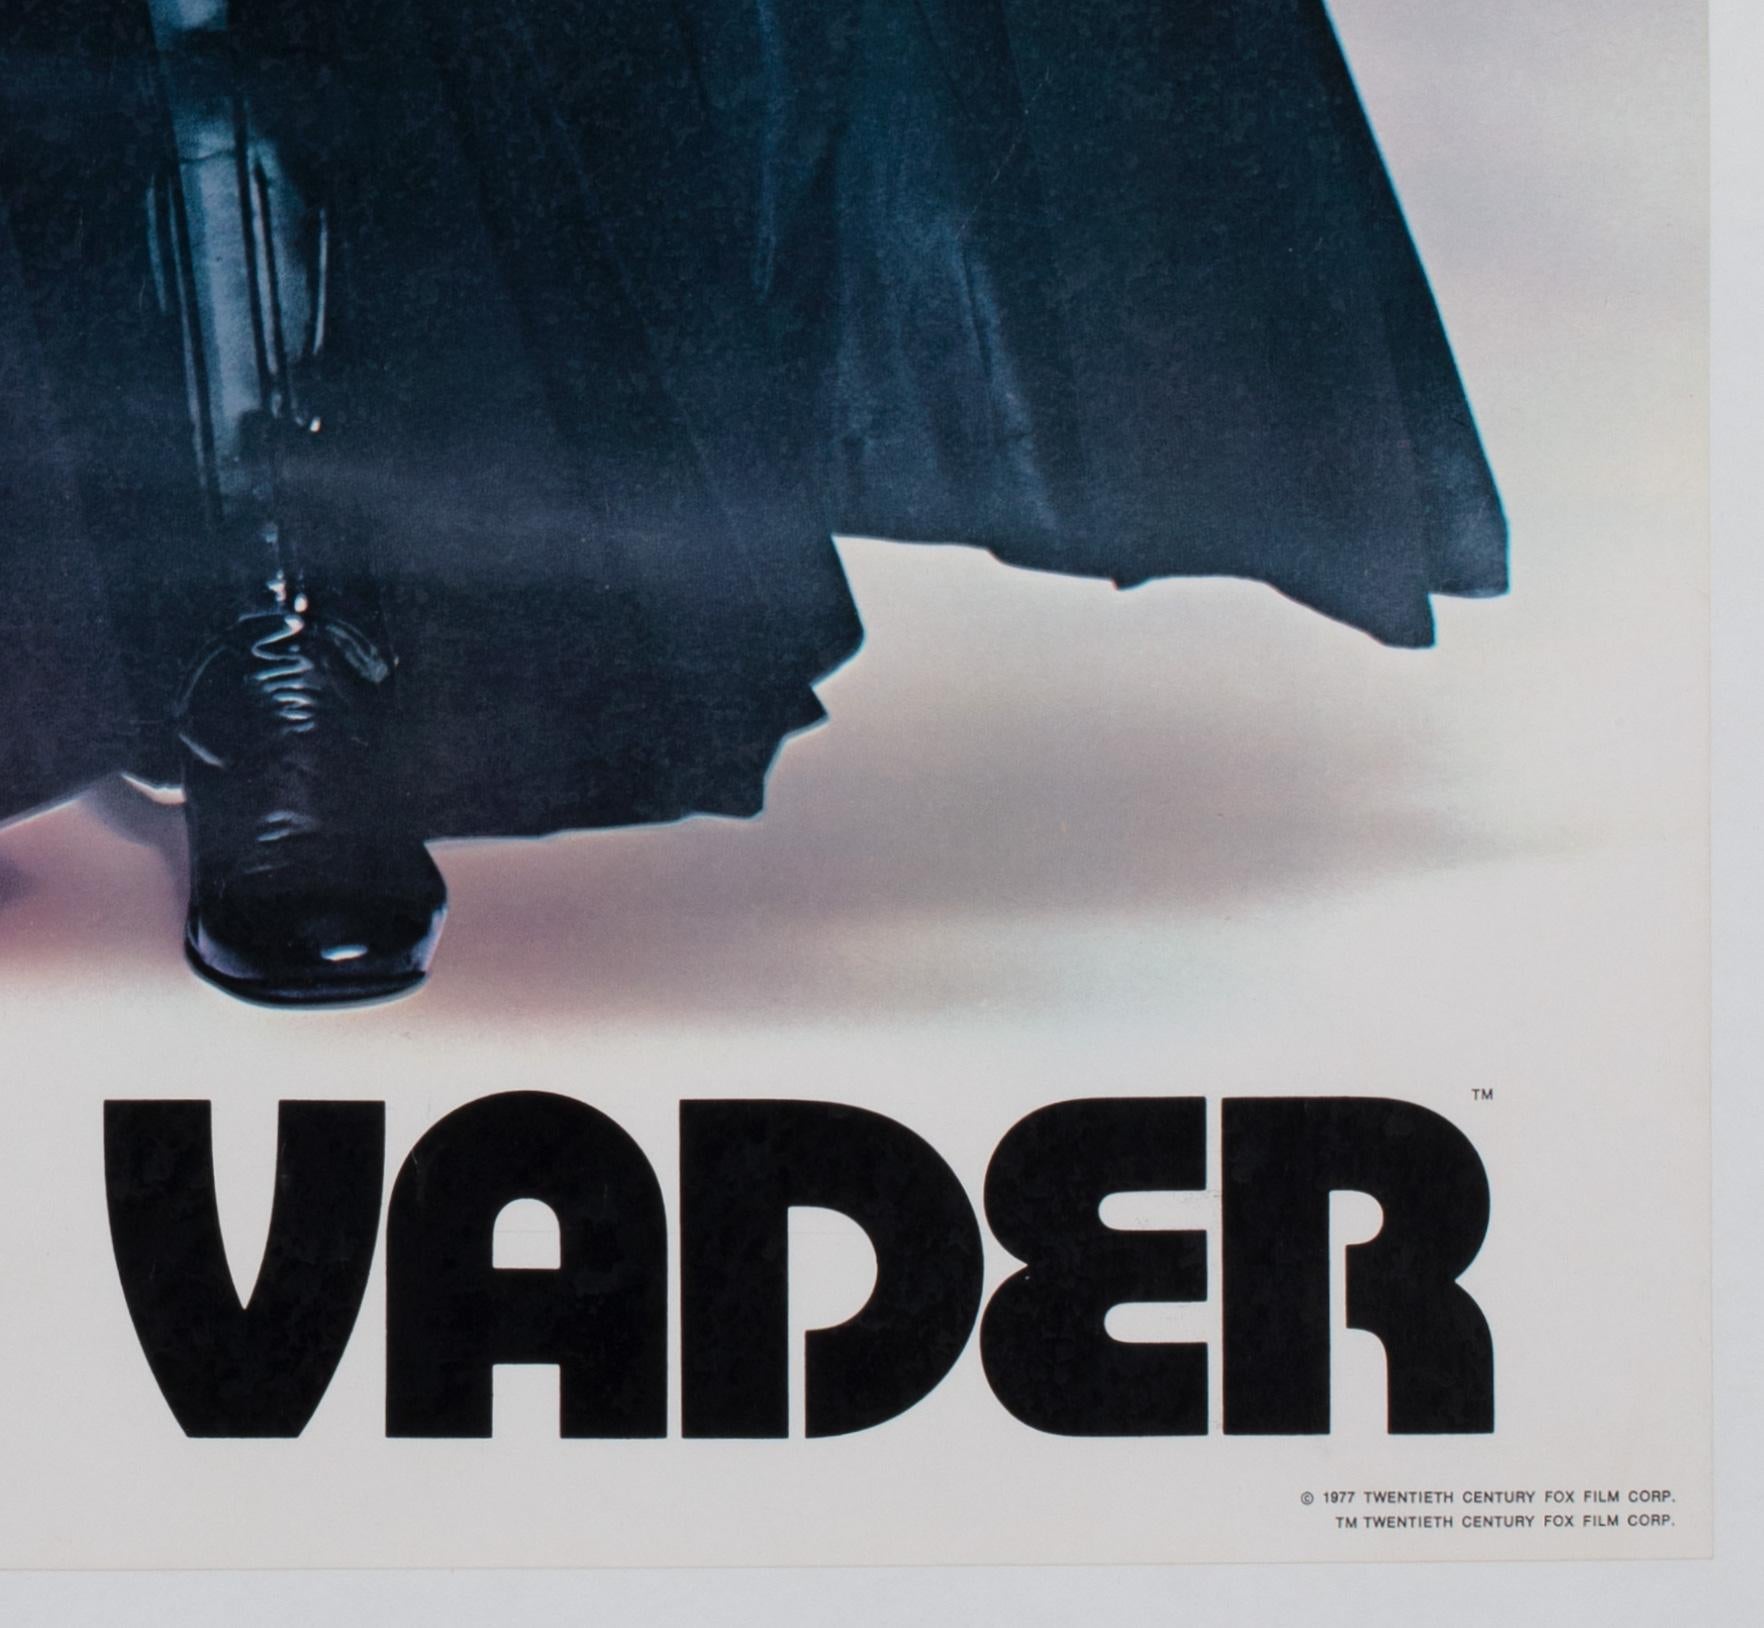 Star Wars Darth Vader 1977 Vintage Factor Inc Commercial Poster For Sale 2